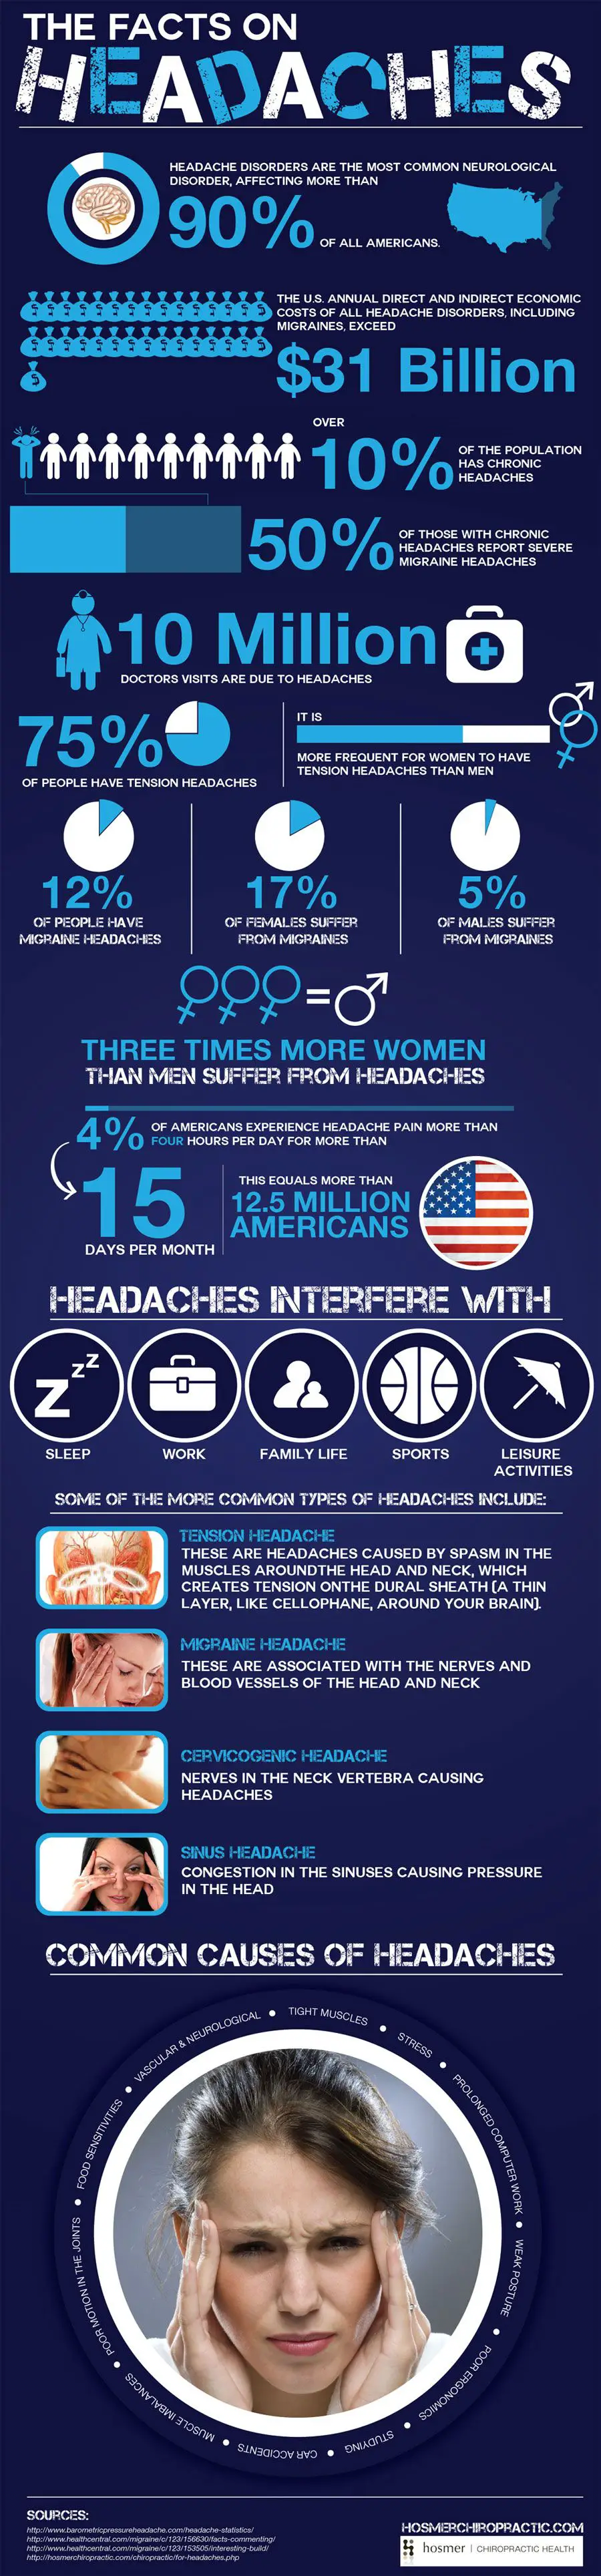 headaches facts